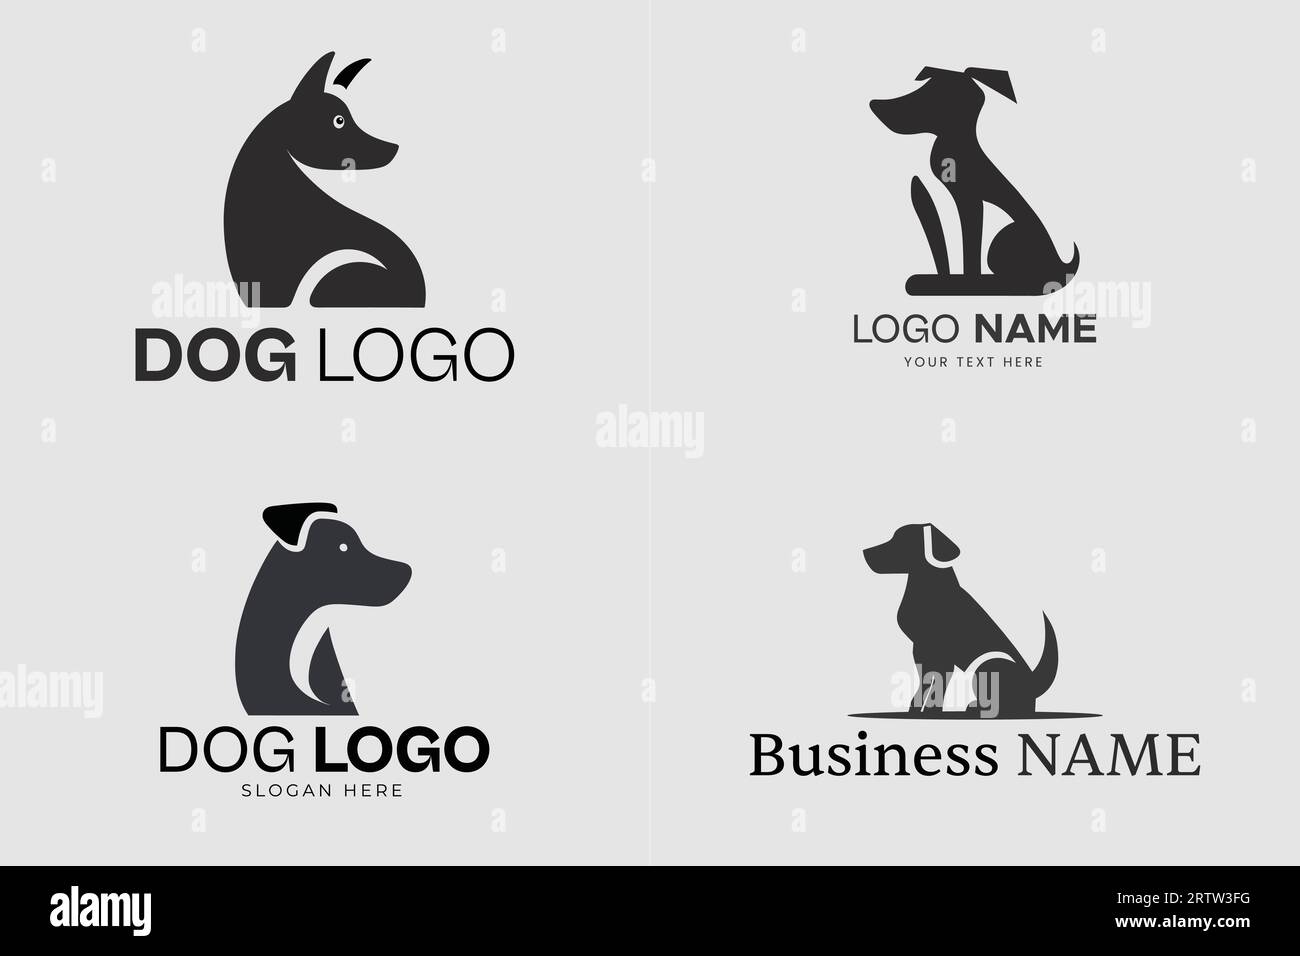 Logo con silhouette per cani in bianco e nero, logo Vector Dog, logo modificabile Illustrazione Vettoriale